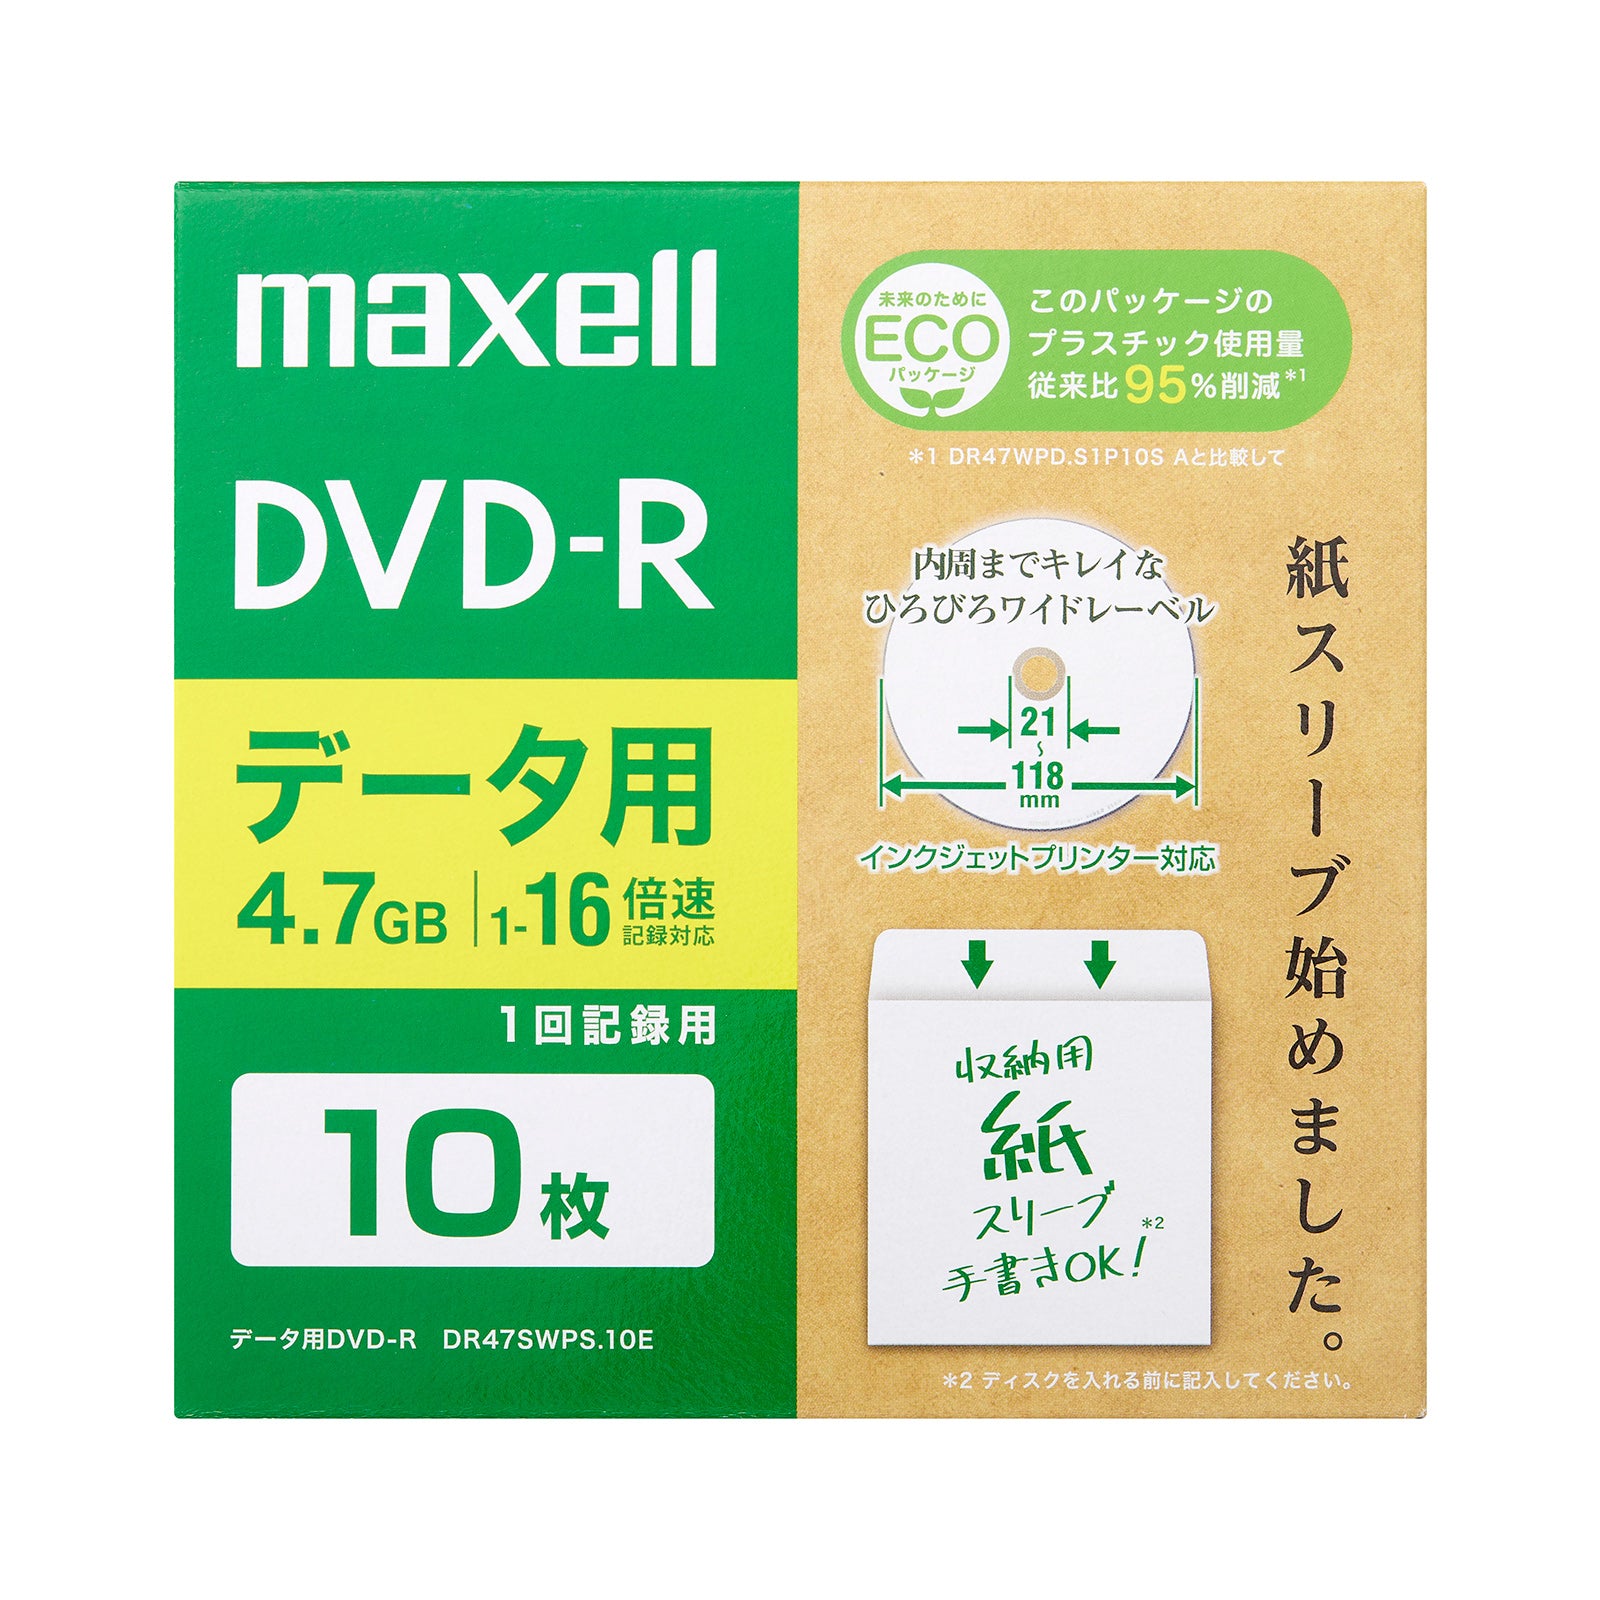 マクセル maxell データ用DVD-R 10枚 DR47SWPS.10E – マクセル公式ショップ本店